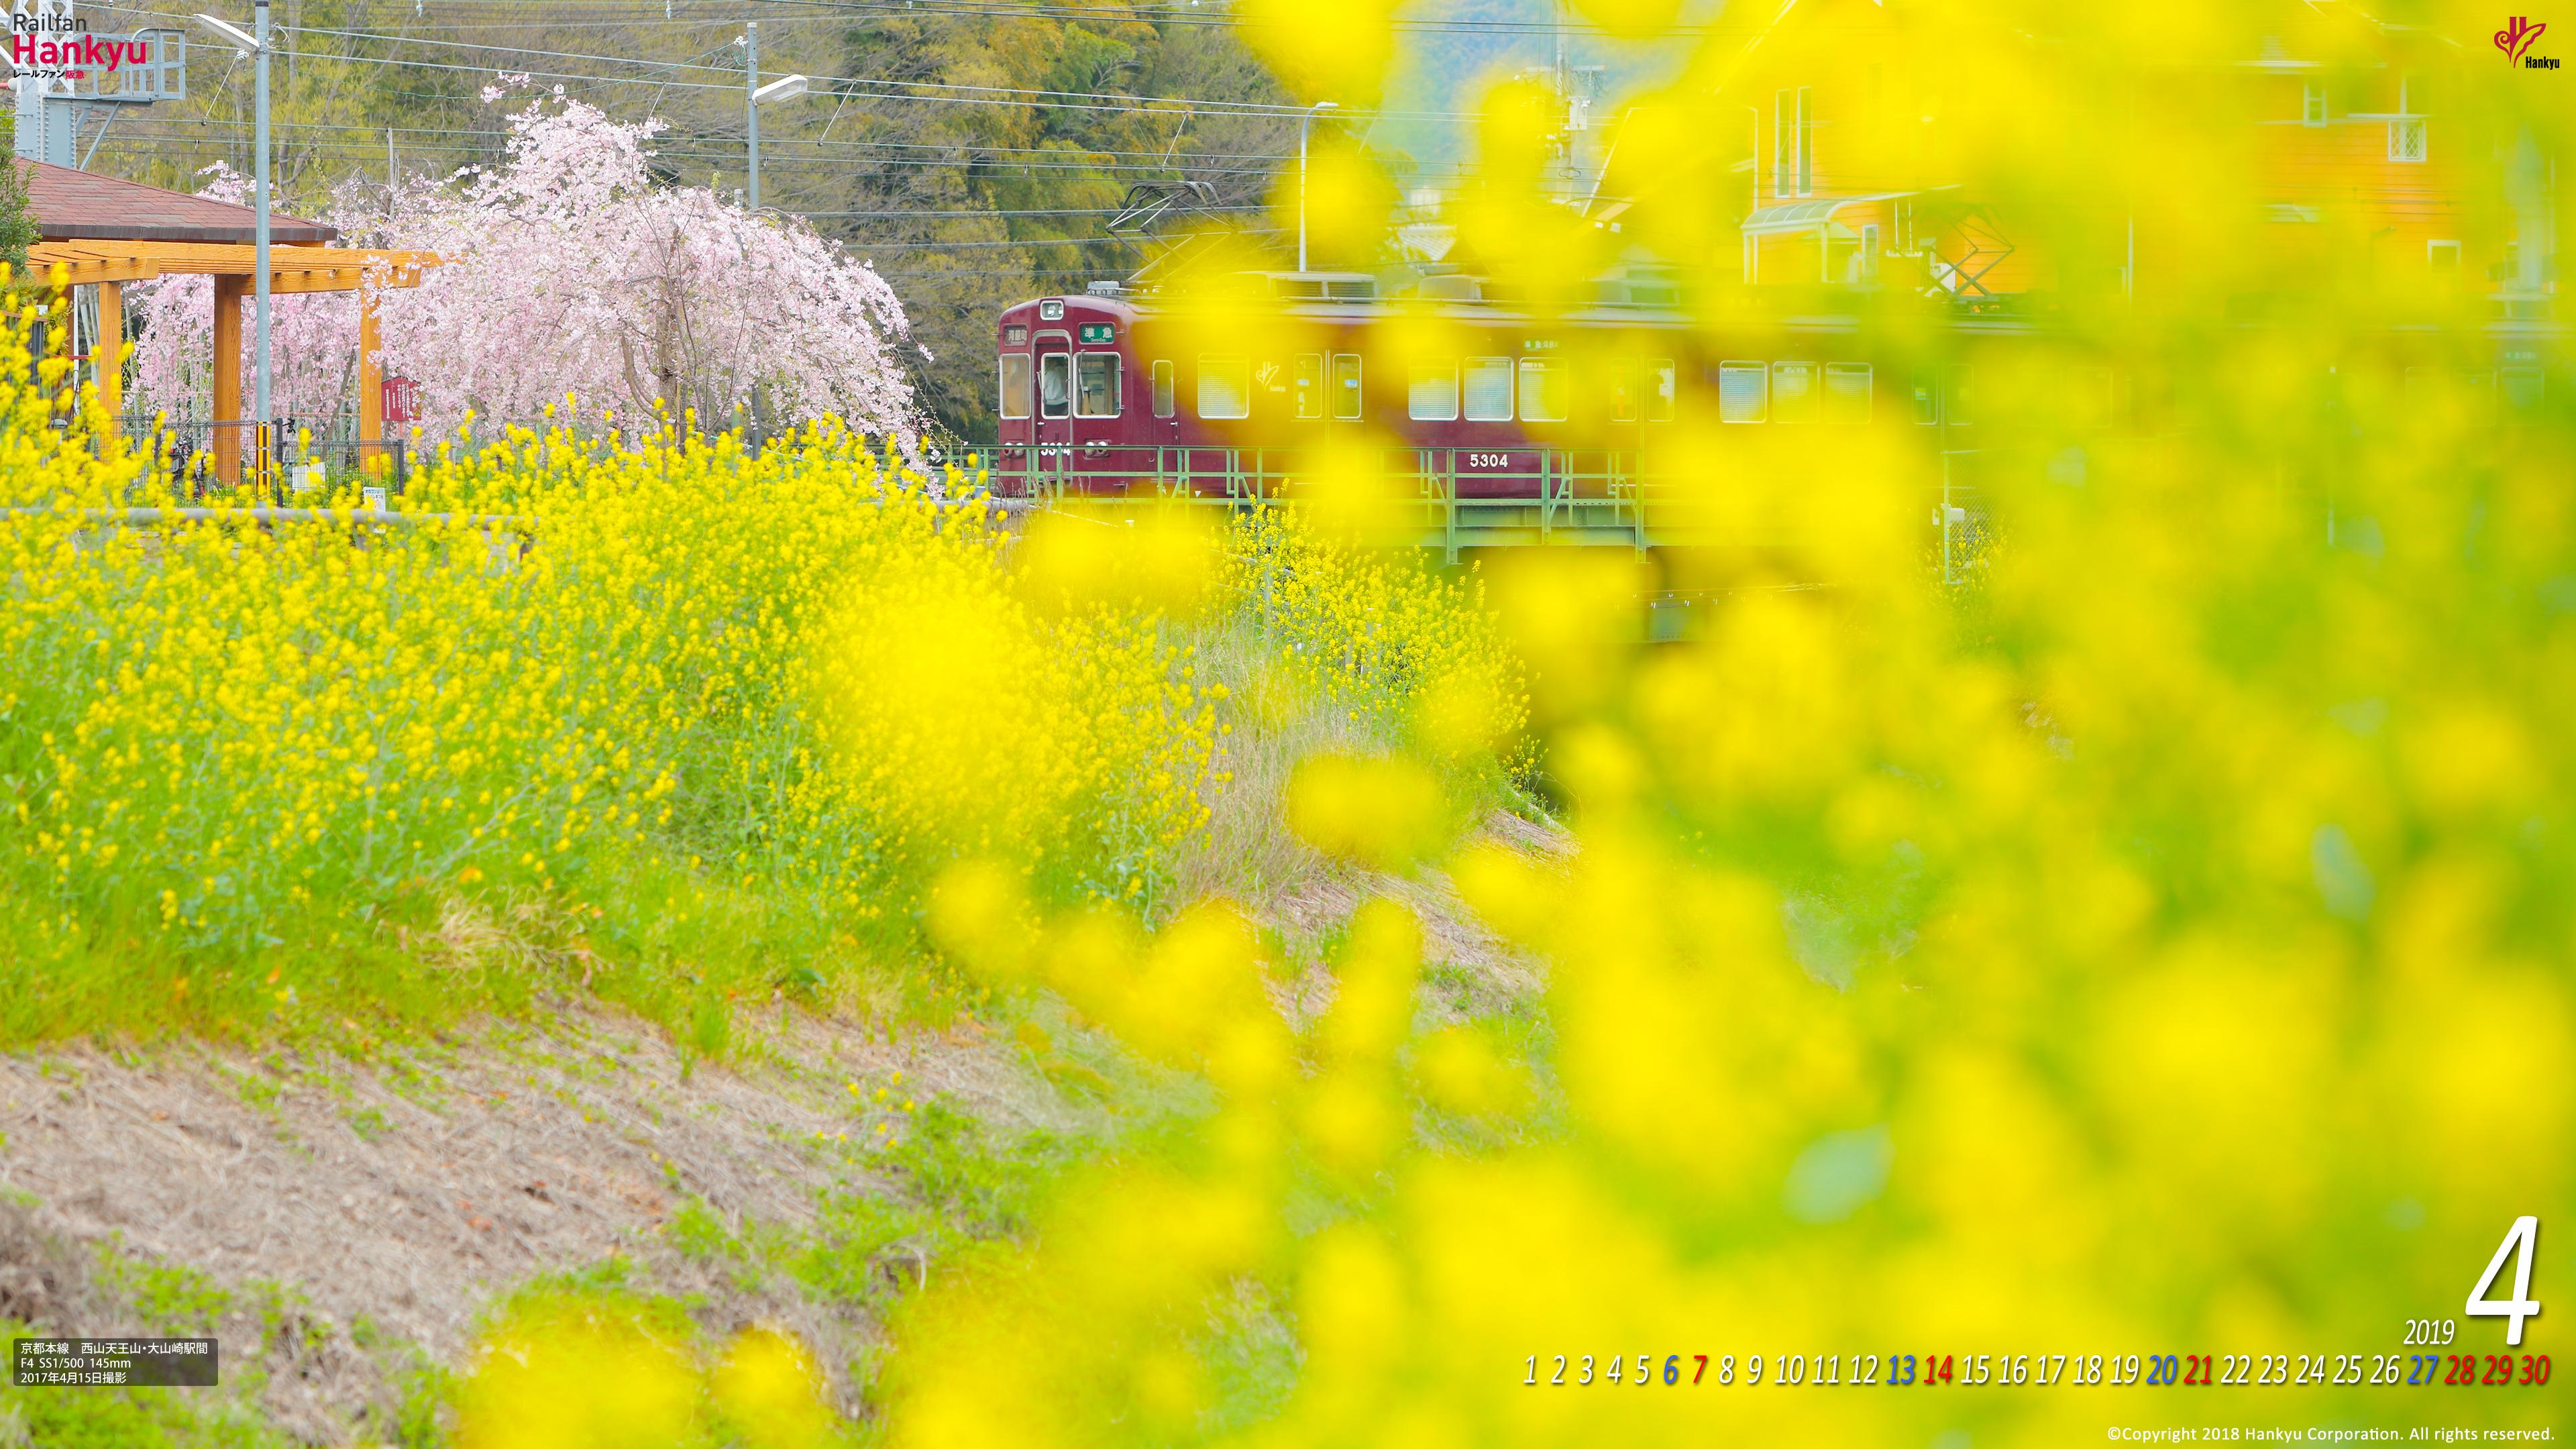 19年04月 壁紙カレンダー レールファン阪急 阪急電車 公式鉄道ファンサイト 阪急電鉄